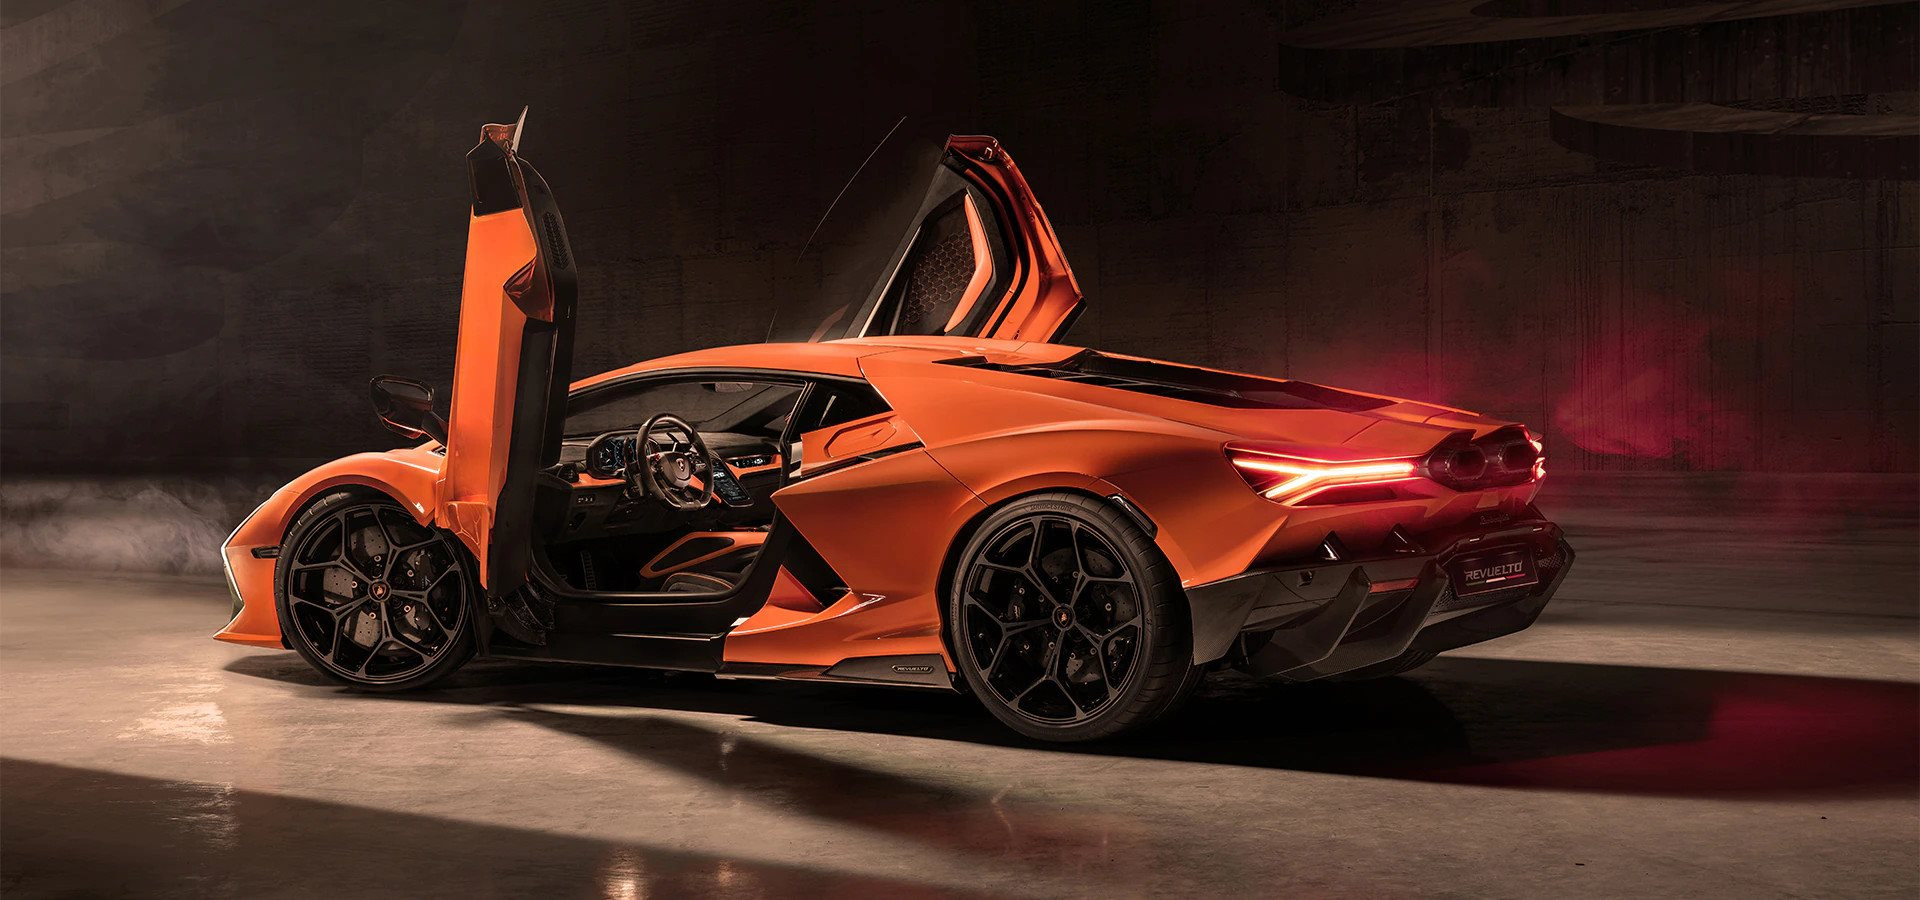 Siêu xe 21 tỷ đồng của Lamborghini có gì hot mà cháy hàng đến hết năm 2025, người giàu đến mấy cũng phải tranh nhau xếp hàng? - Ảnh 3.